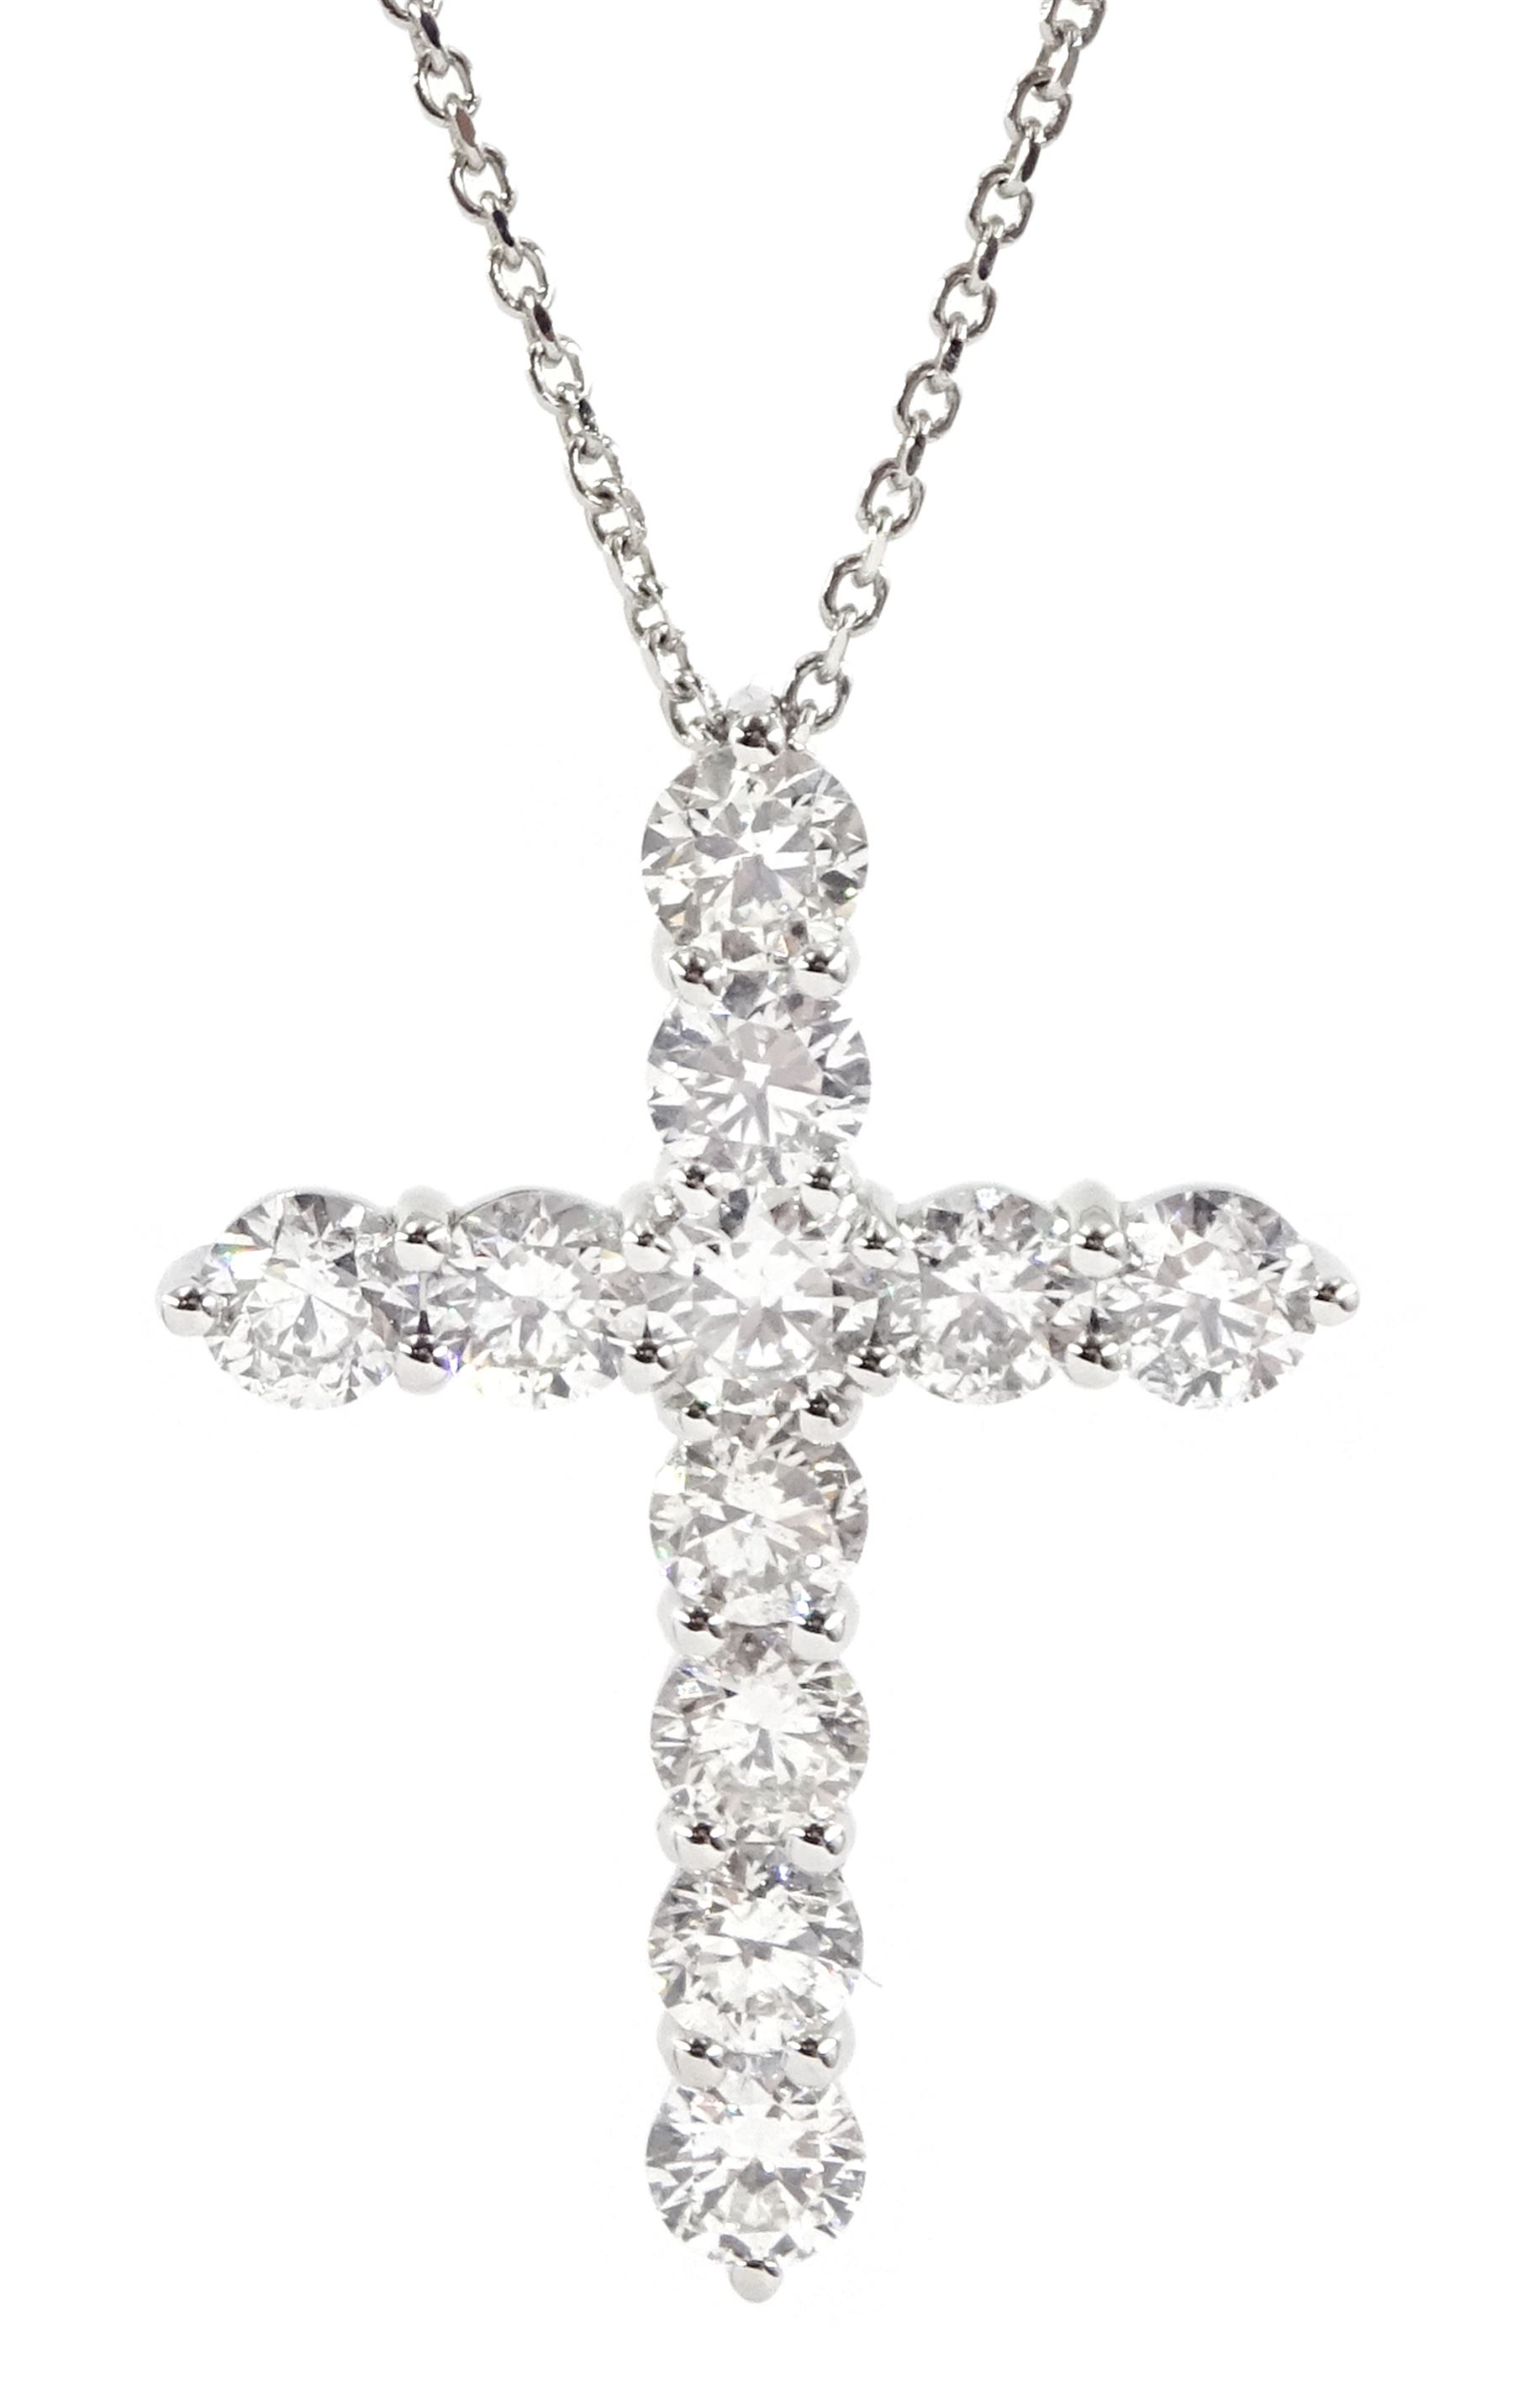 18ct white gold eleven stone round brilliant cut diamond cross pendant necklace